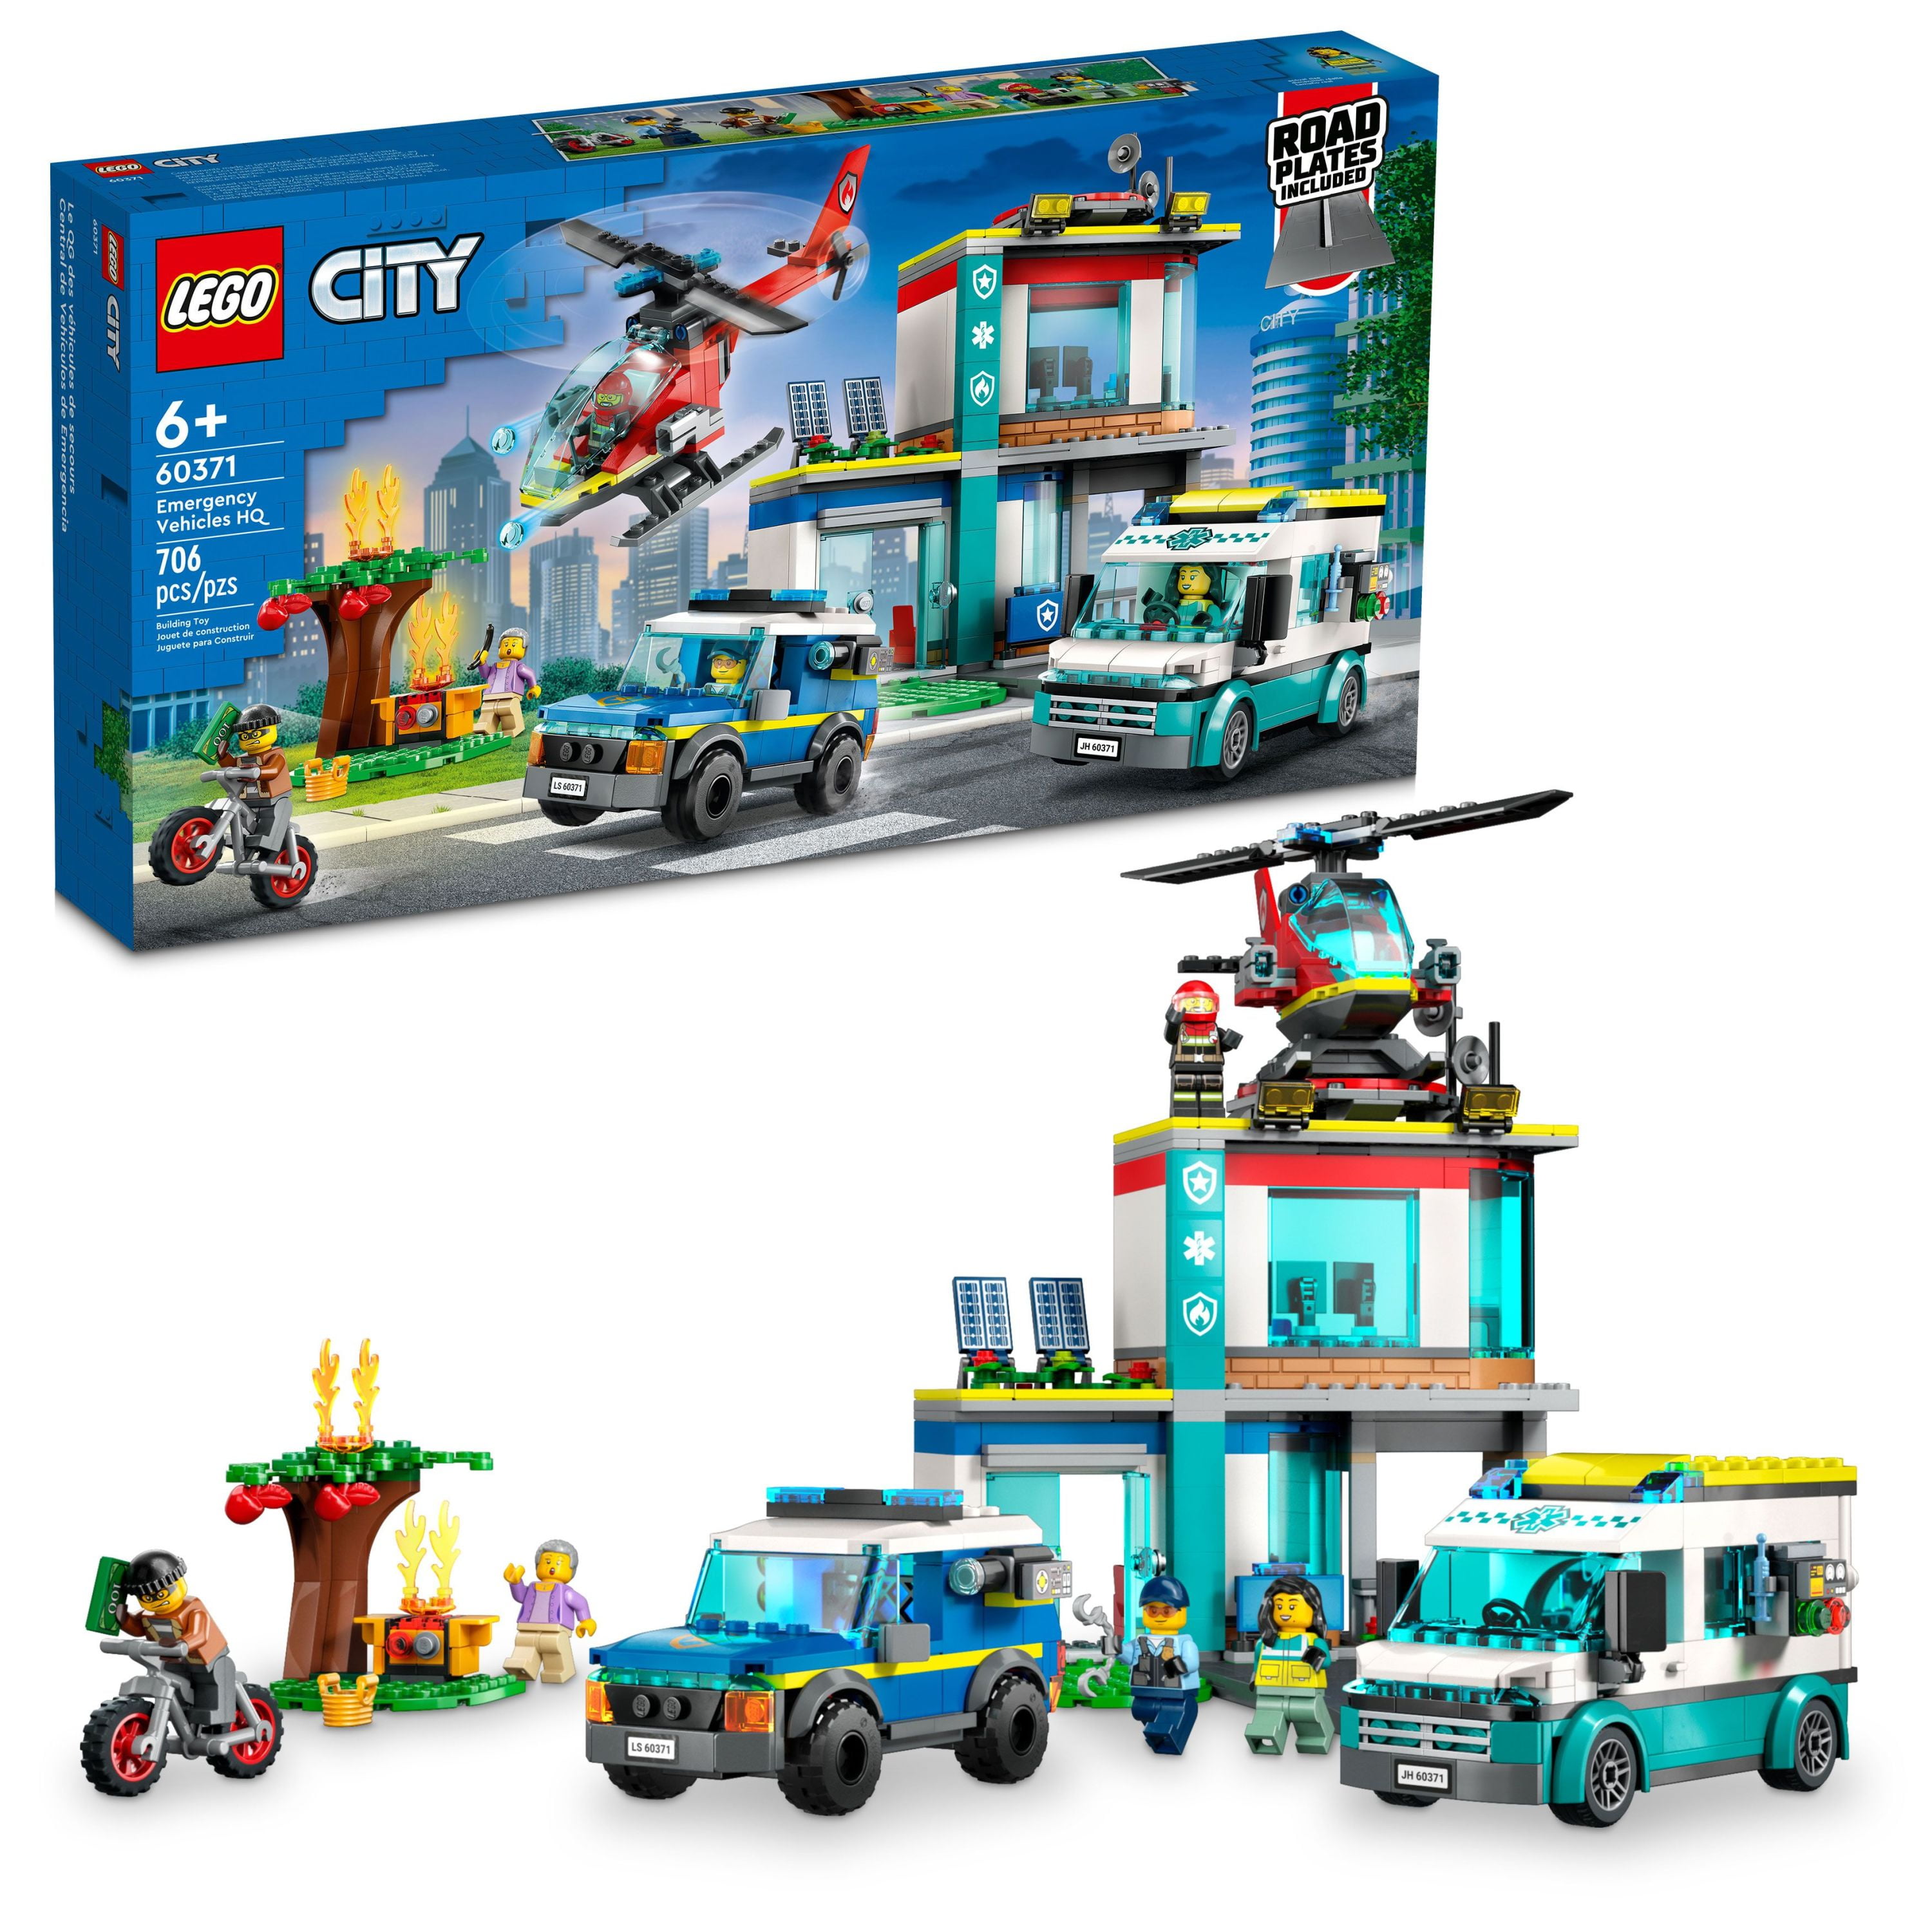 LEGO City Police Police Air 60210 - Walmart.com